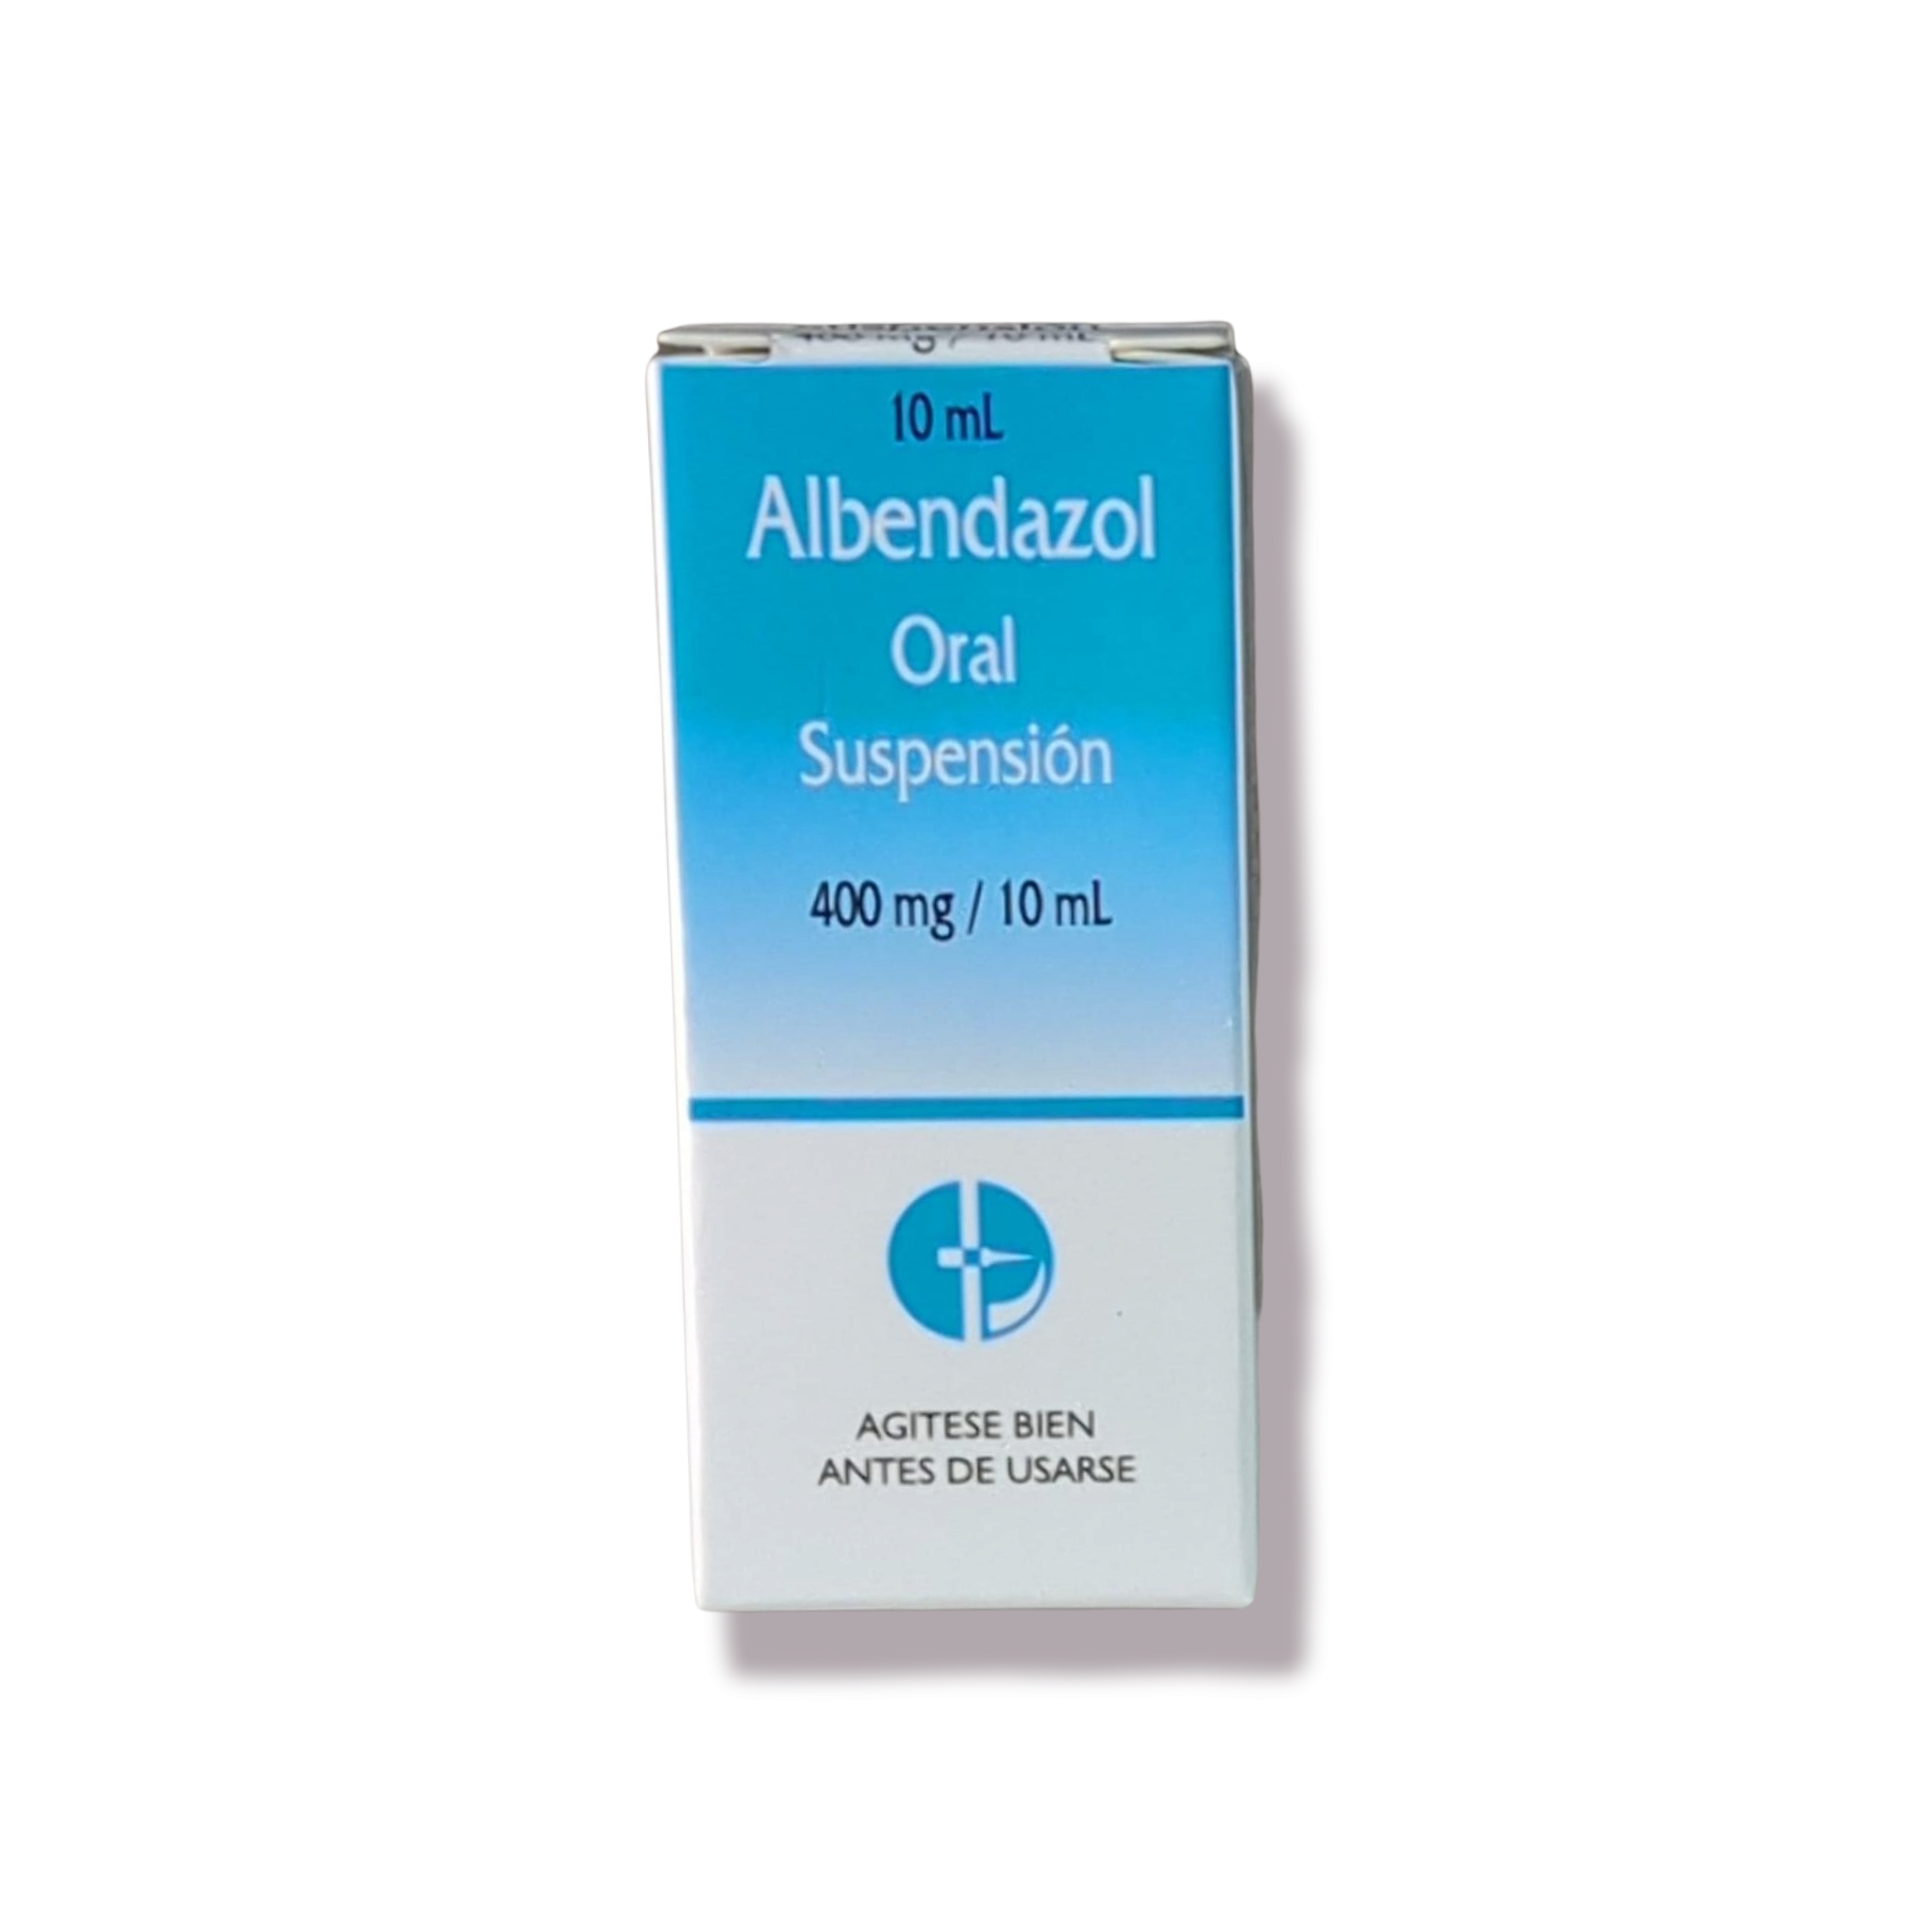 Albendazol  tableta y oral dt.